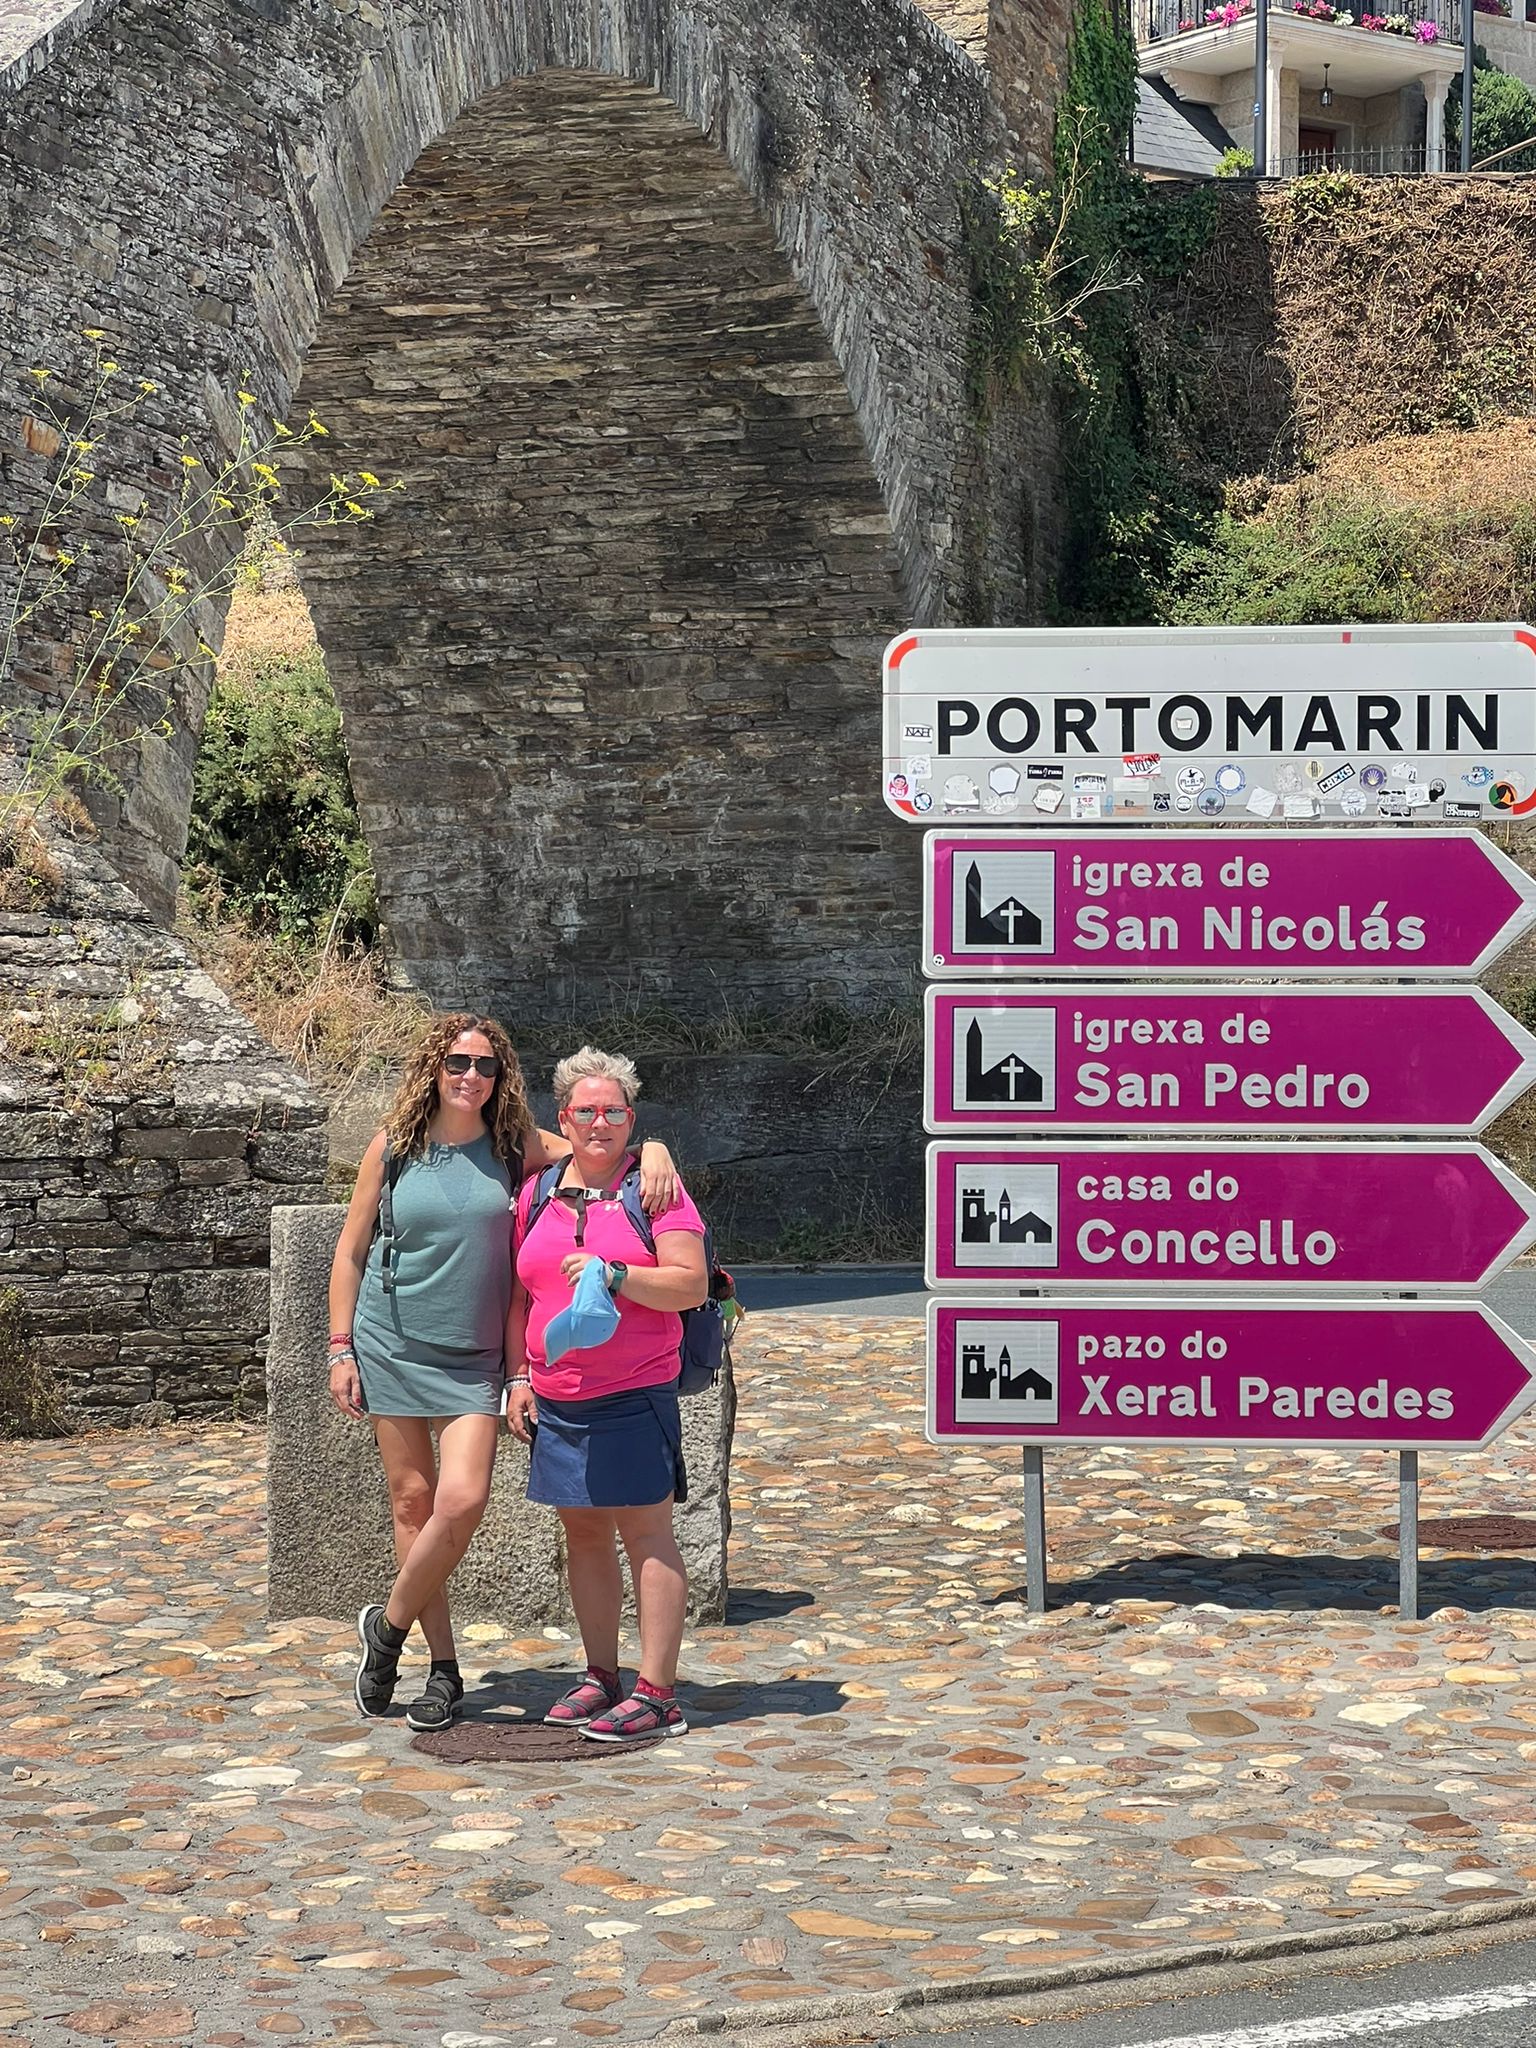 Day 2 : Sarria - Portomarín (22.2 km ∼ 5 hours)